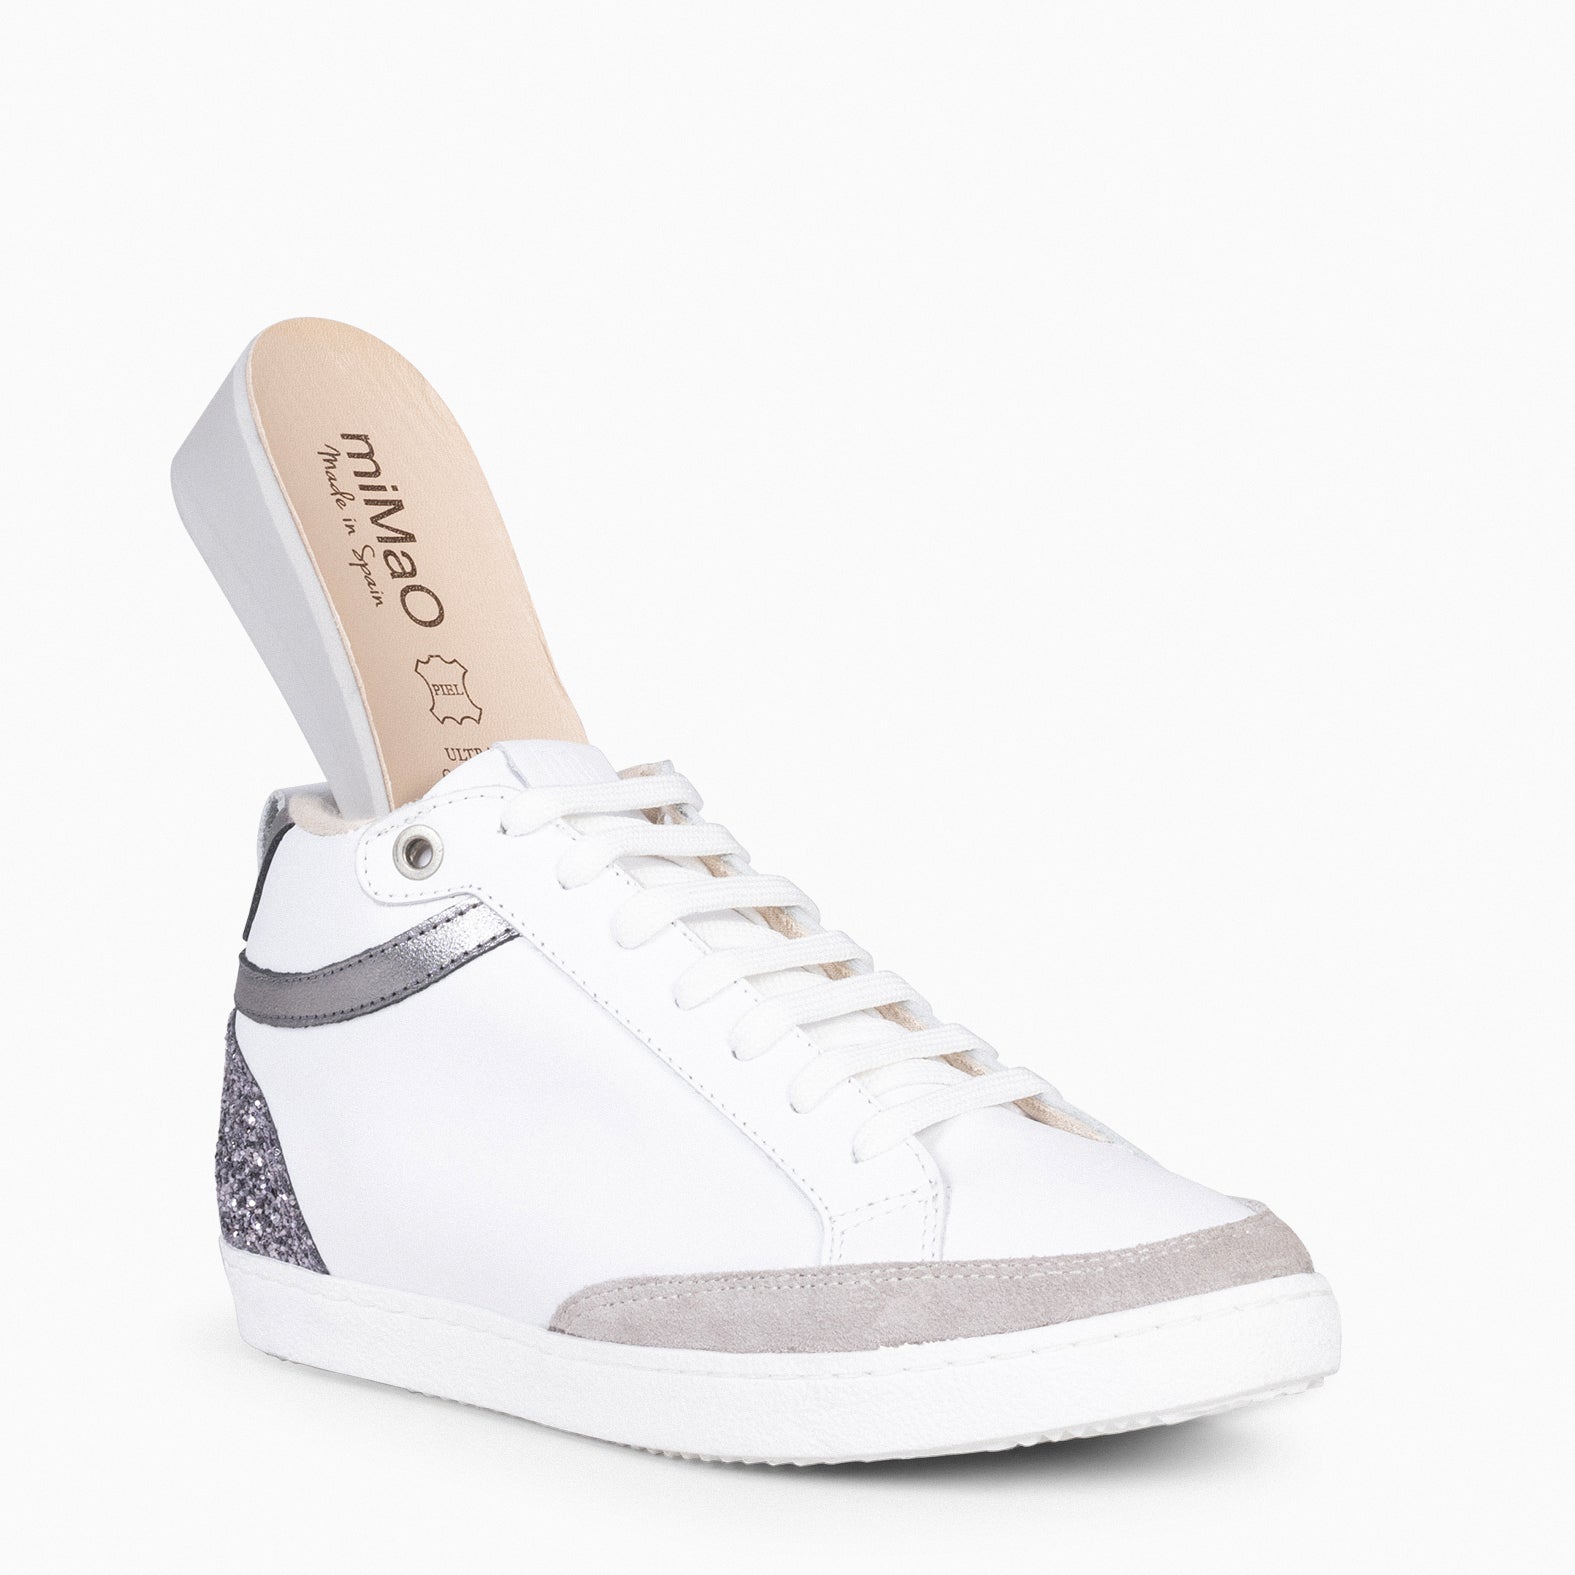 RACHEL – WHITE GLITTER Women wedge sneakers 